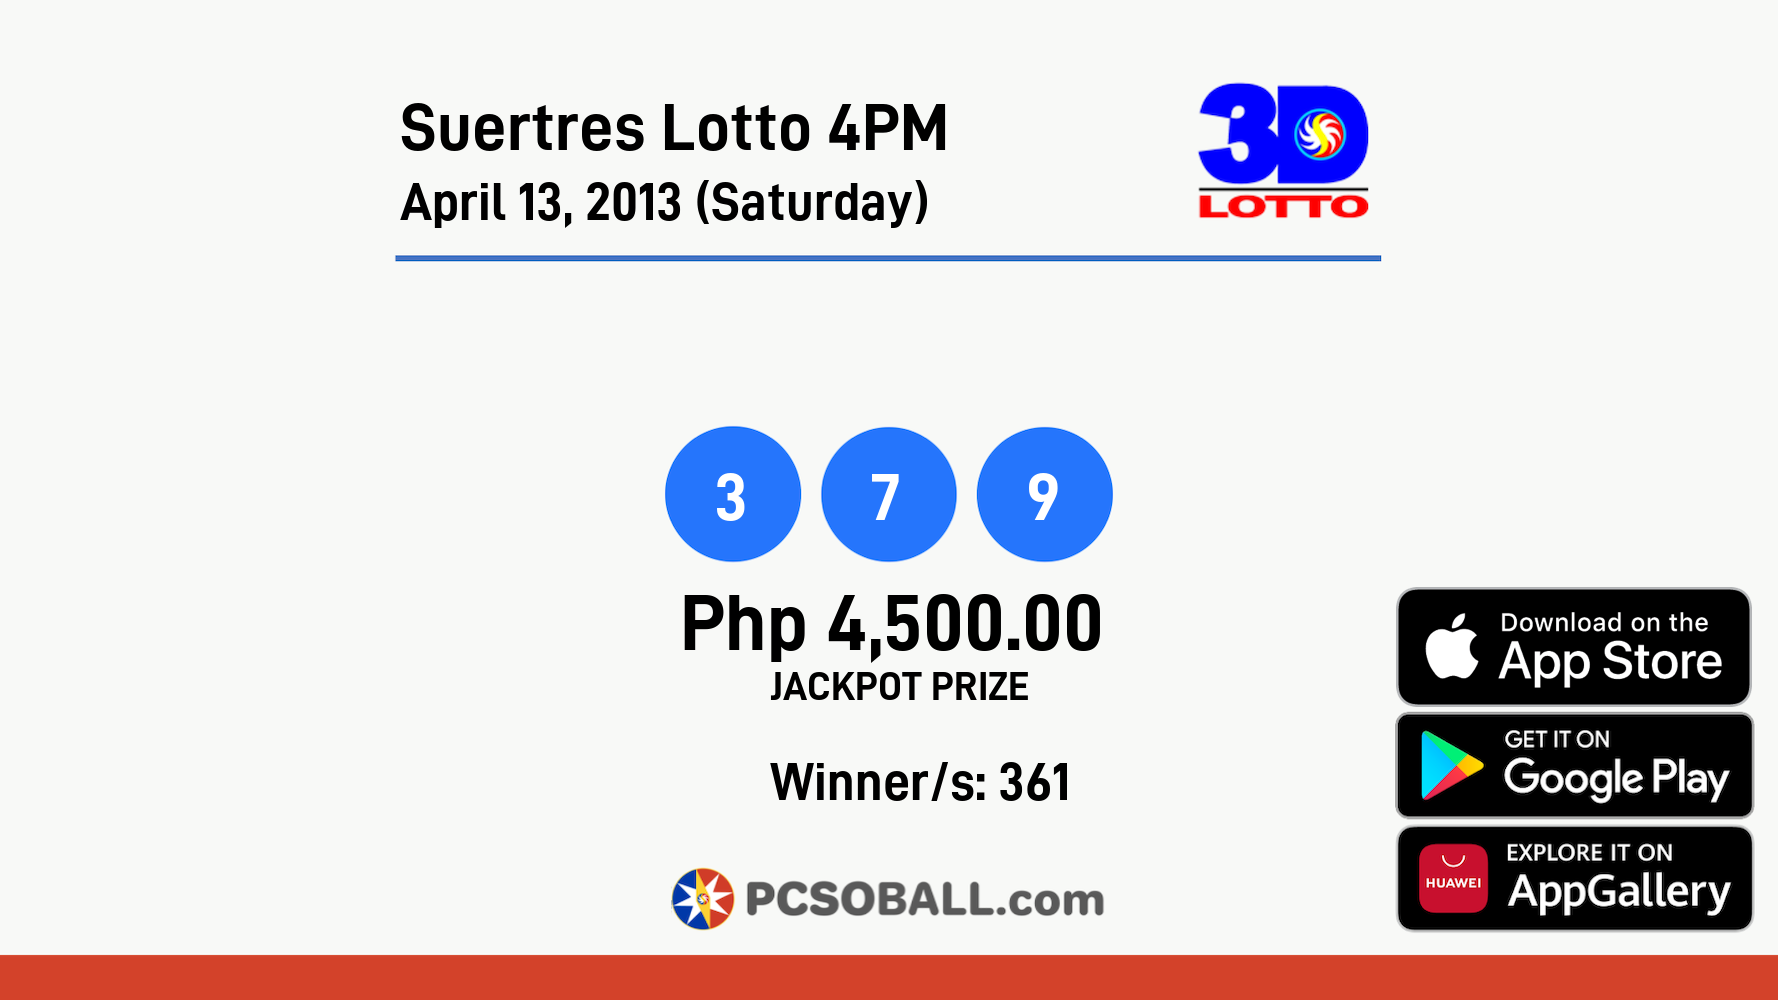 Suertres Lotto 4PM April 13, 2013 (Saturday) Result